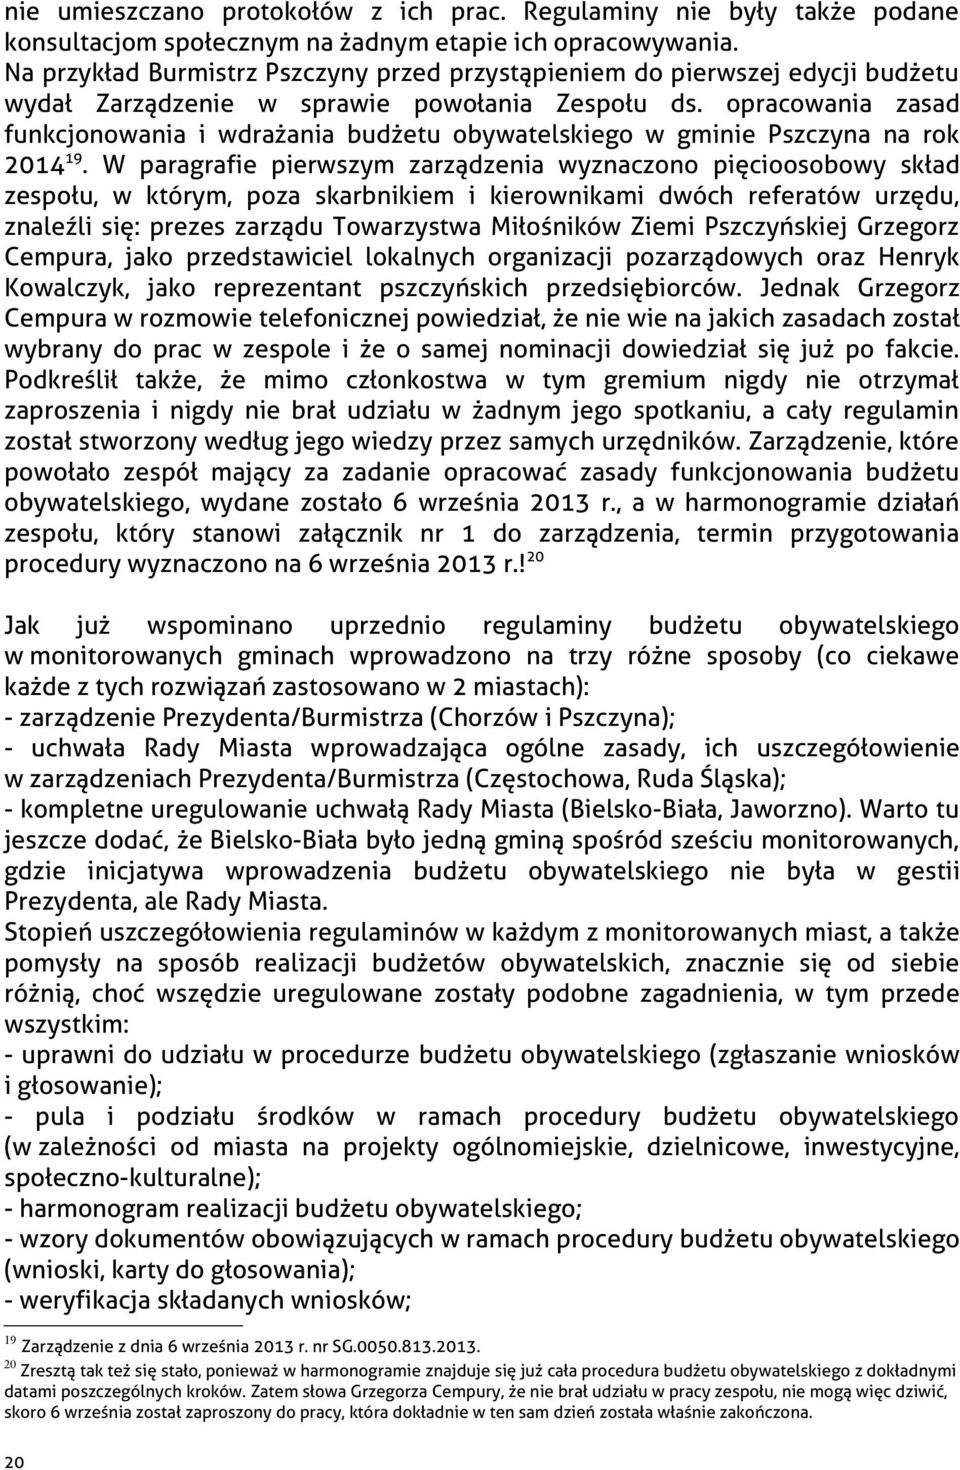 opracowania zasad funkcjonowania i wdrażania budżetu obywatelskiego w gminie Pszczyna na rok 2014 19.